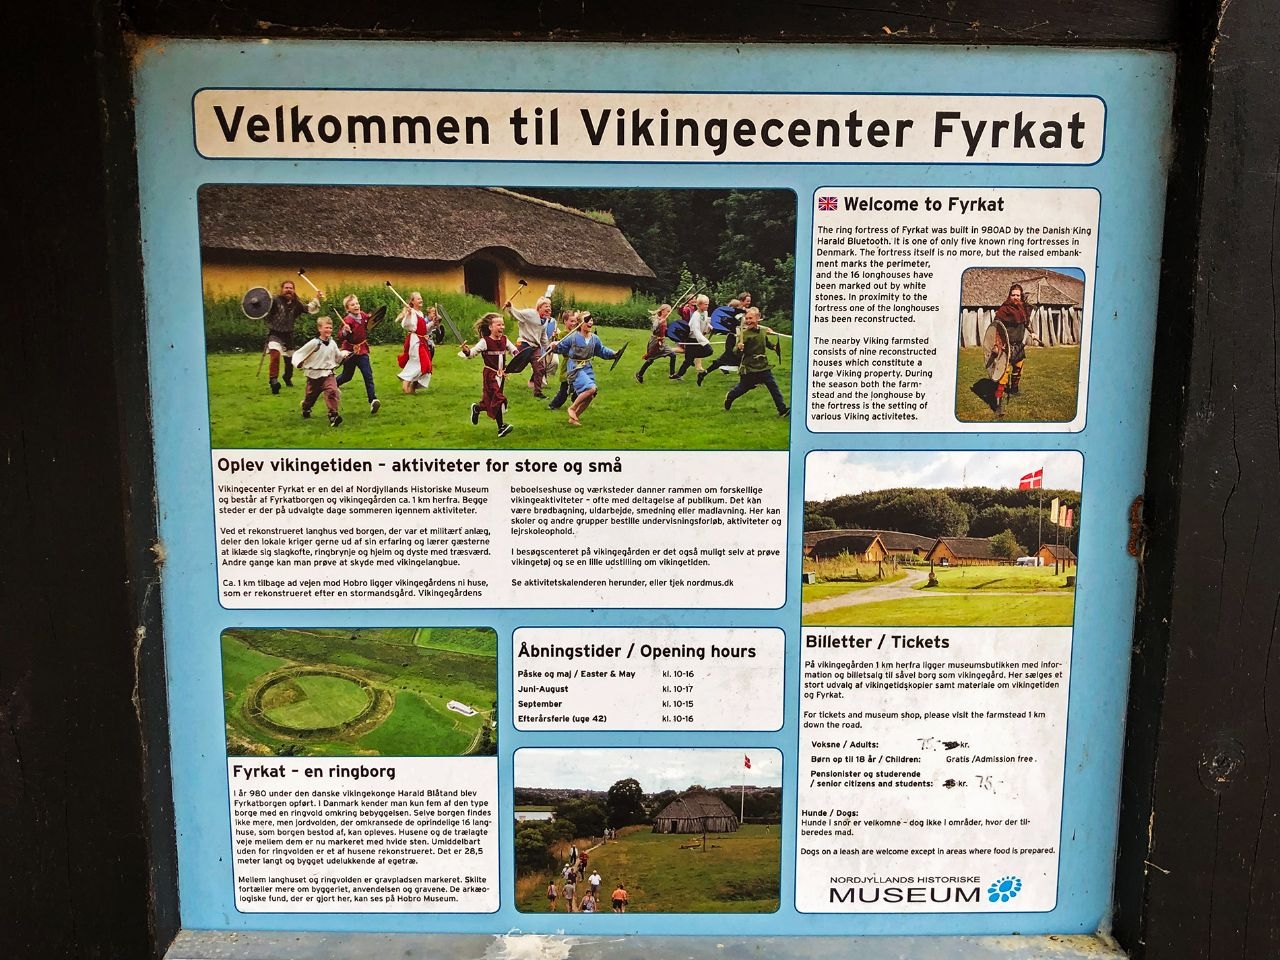 Фюркат (кольцевая крепость викингов) Хобро, Дания